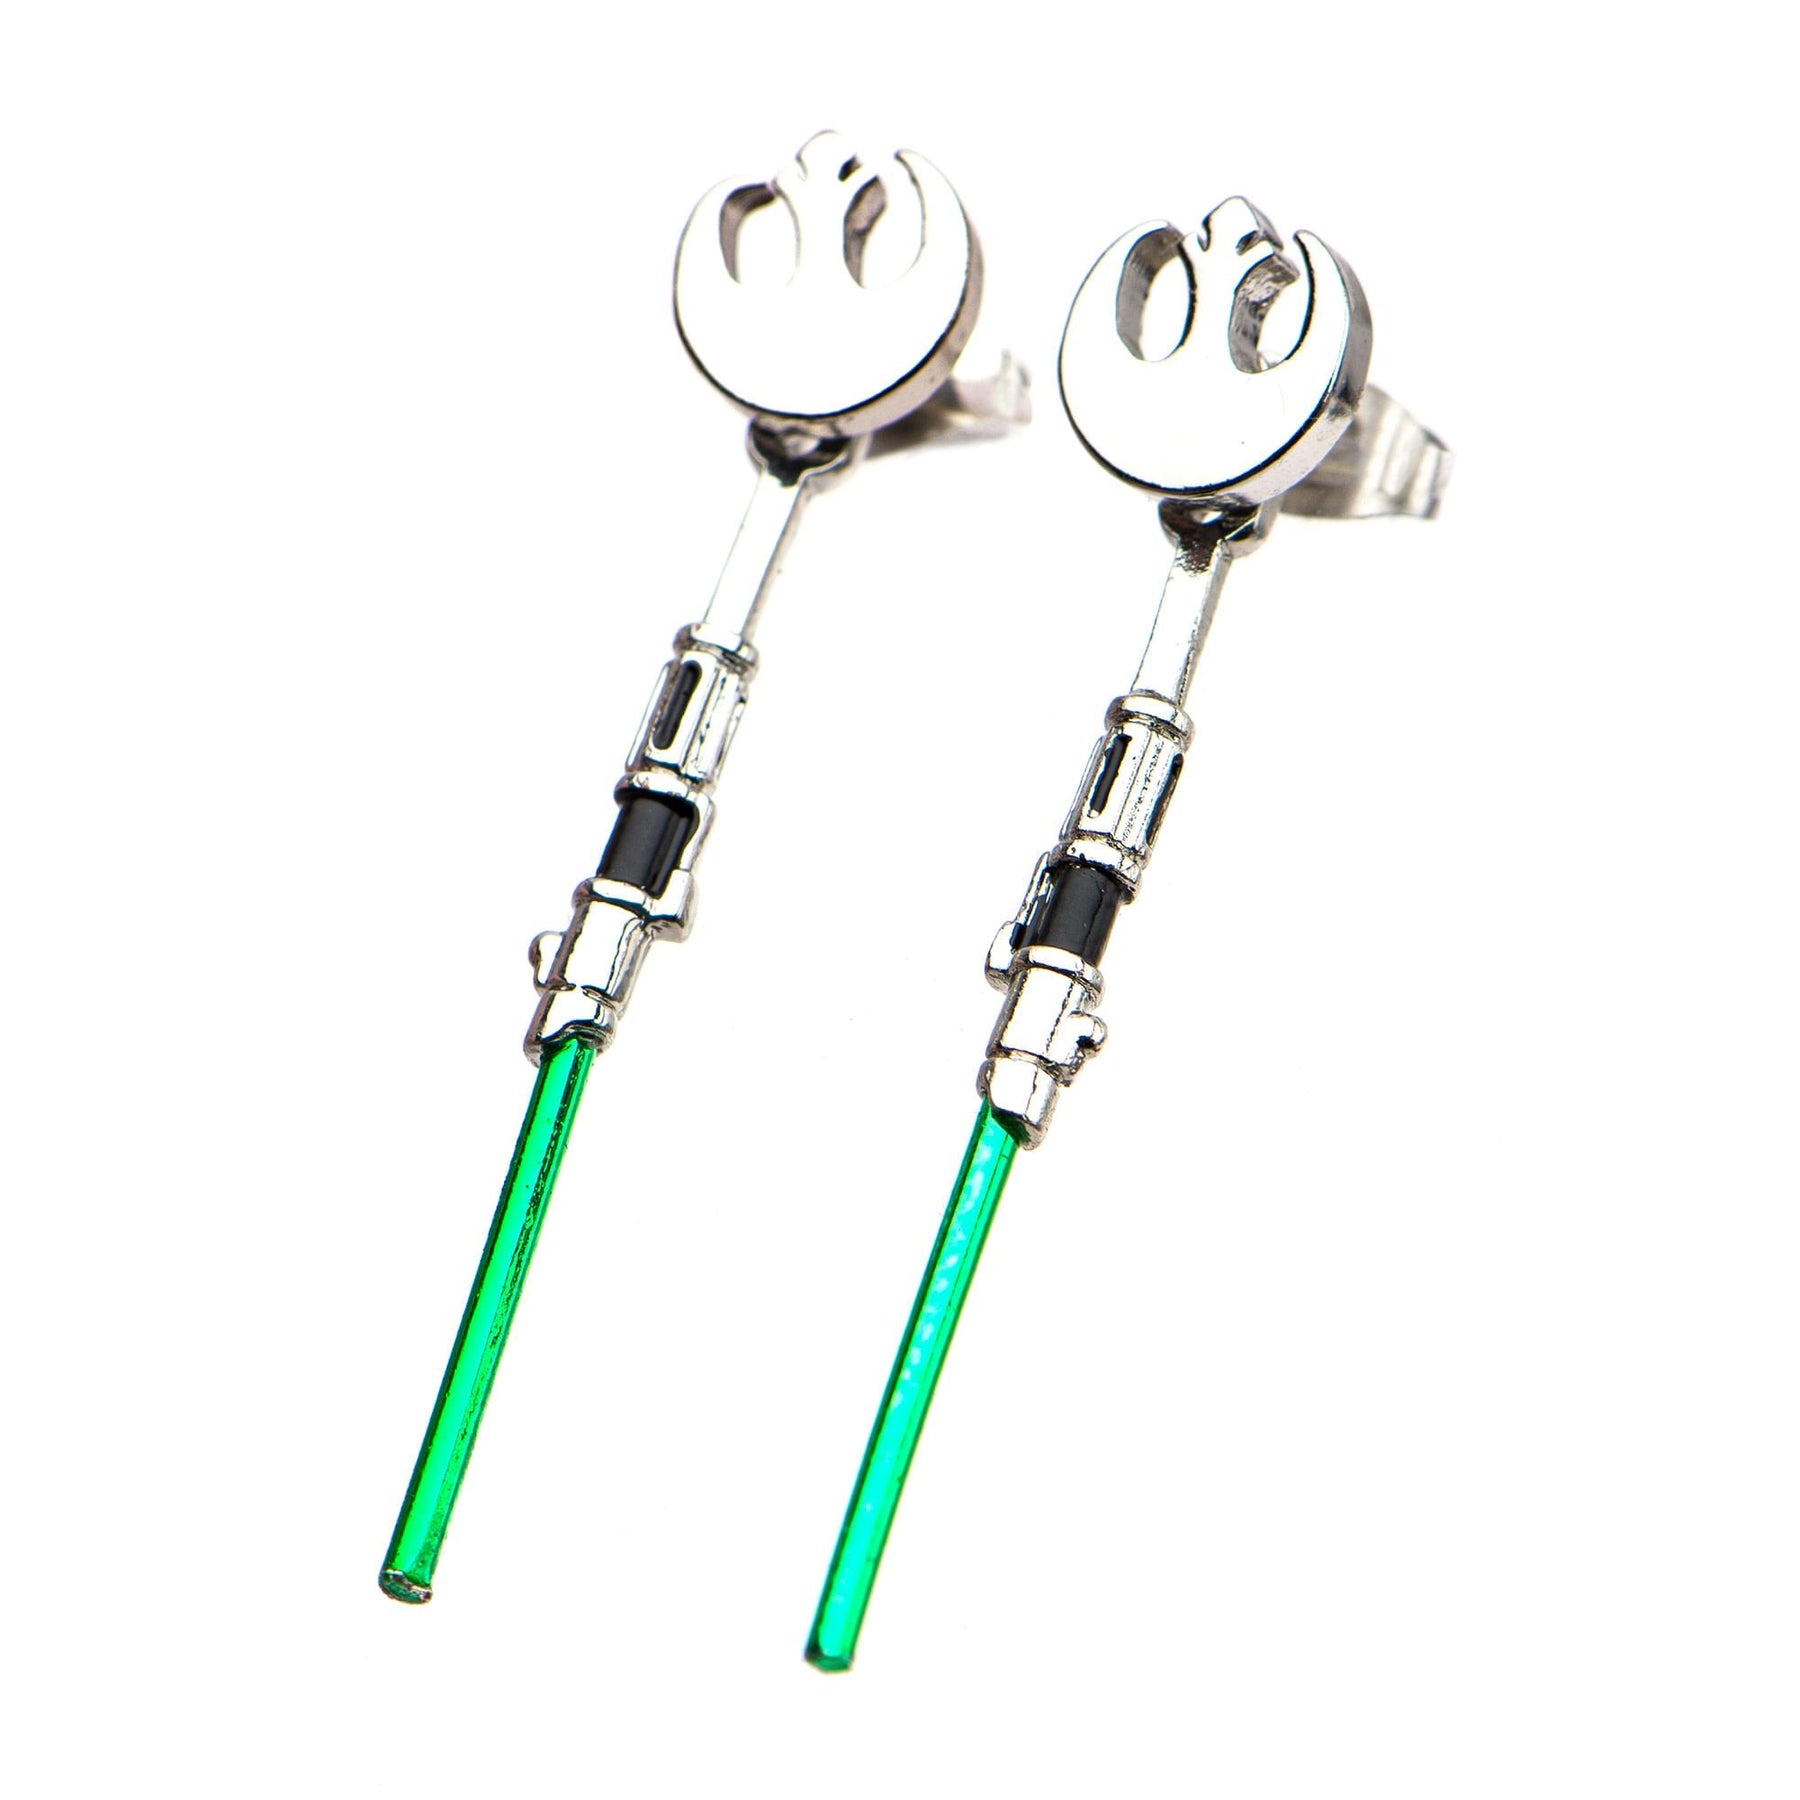 Star Wars Yoda Lightsaber Stainless Steel Jacket Dangle Earrings